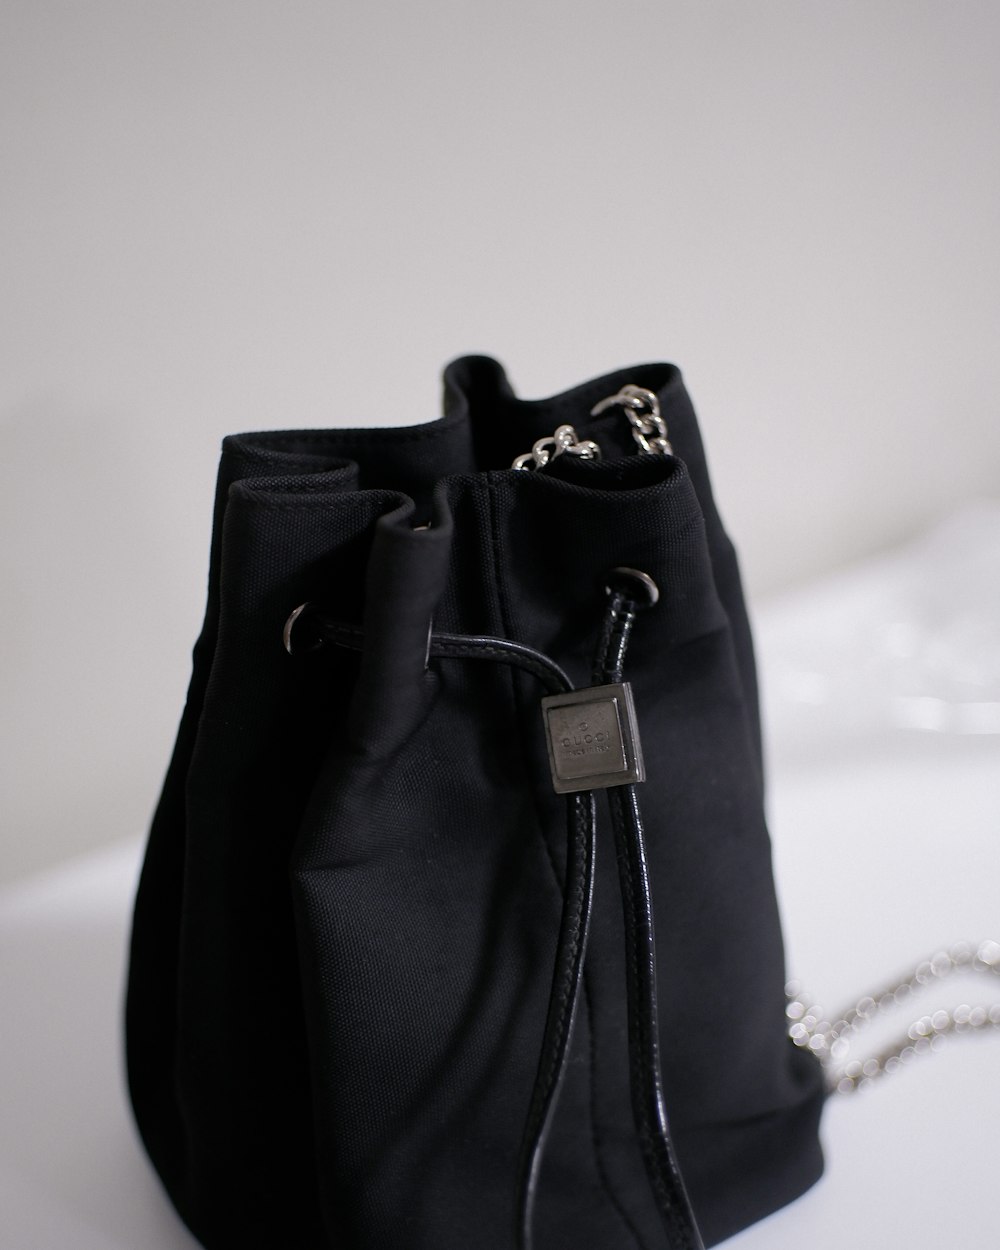 a black bag with a zipper